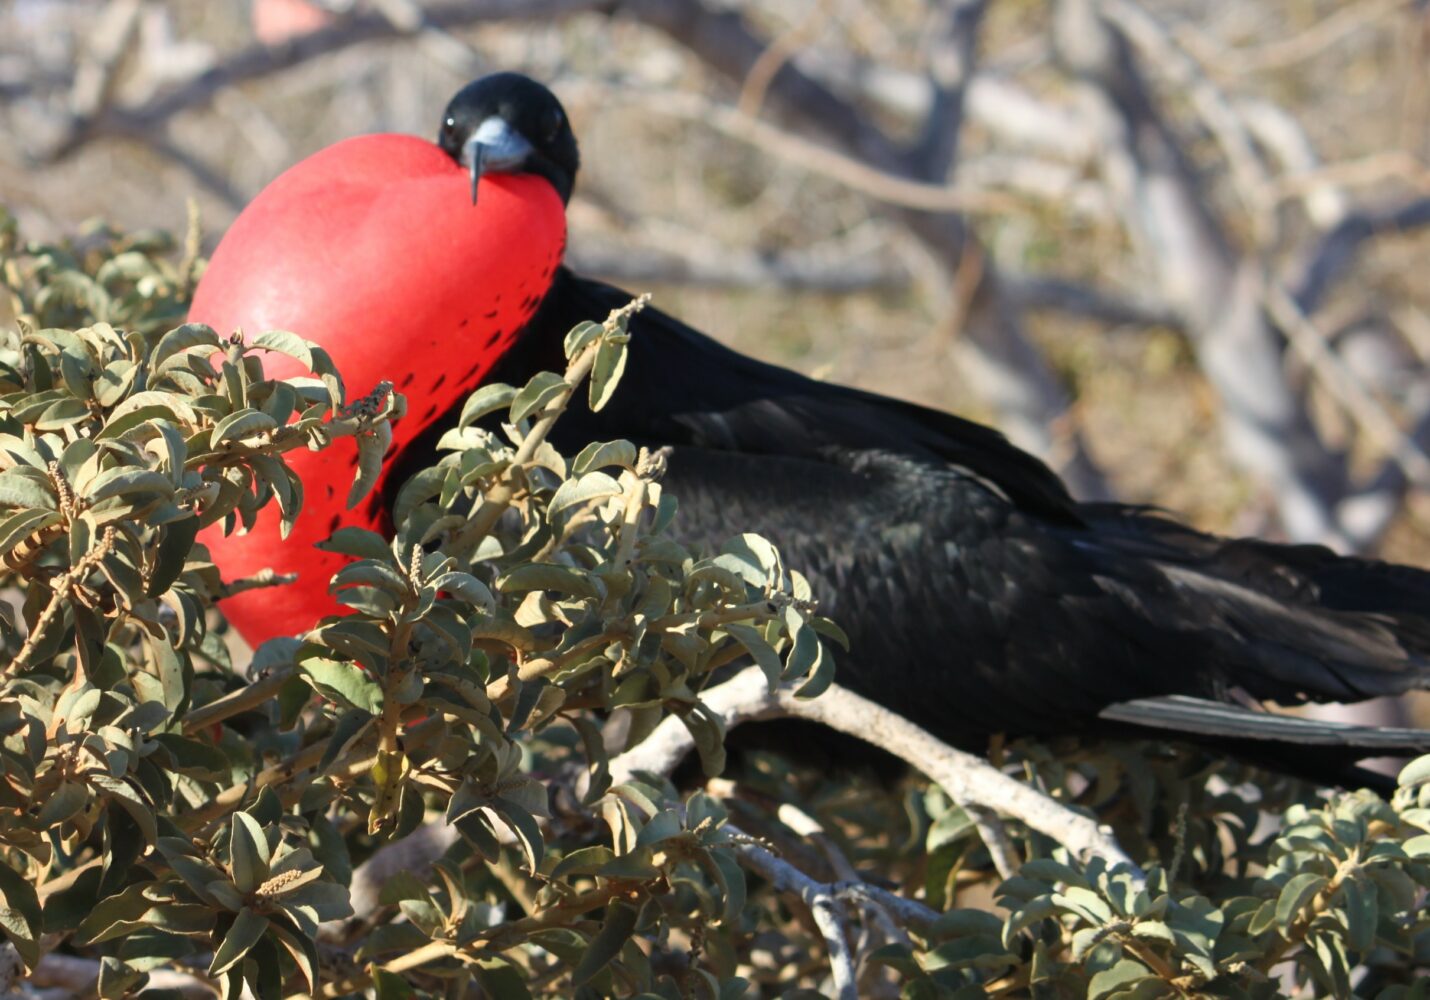 Insel Nord Seymour, Galapagos Inseln - gewaltig anzusehen, die Fregattvogelmännchen